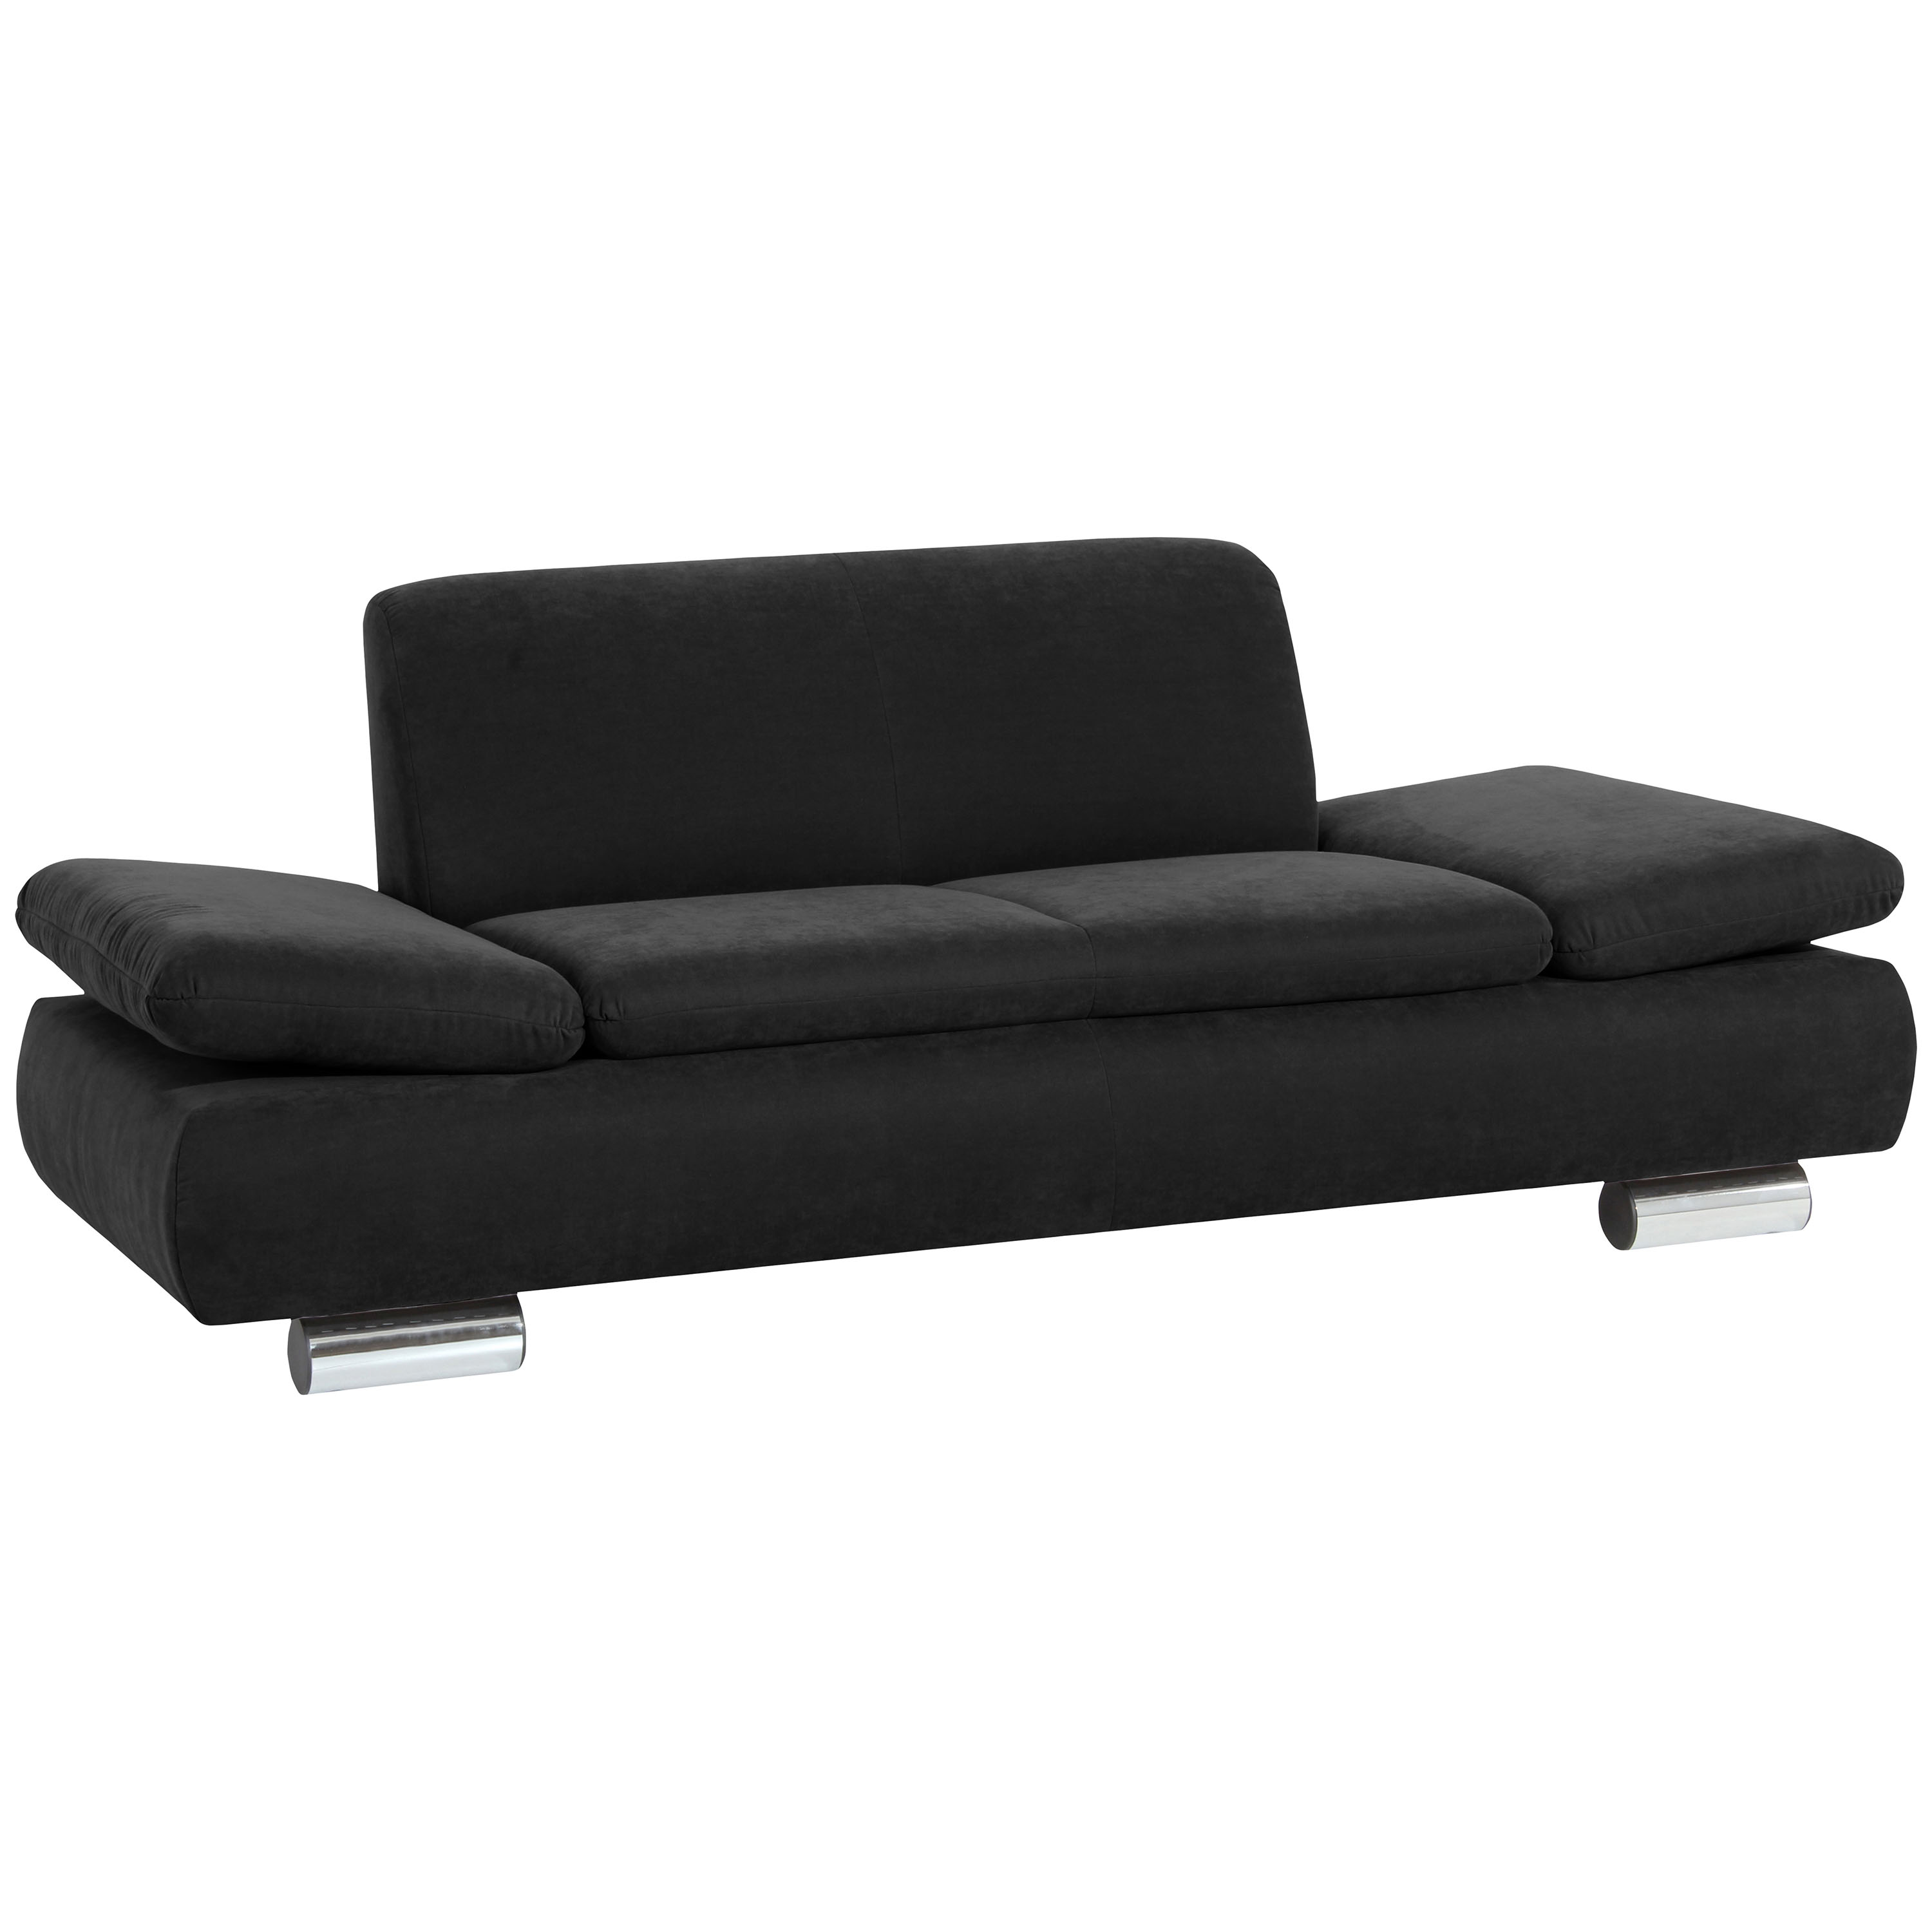 gemütliches 2-sitzer sofa in schwarz mit verchromten metallfüssen